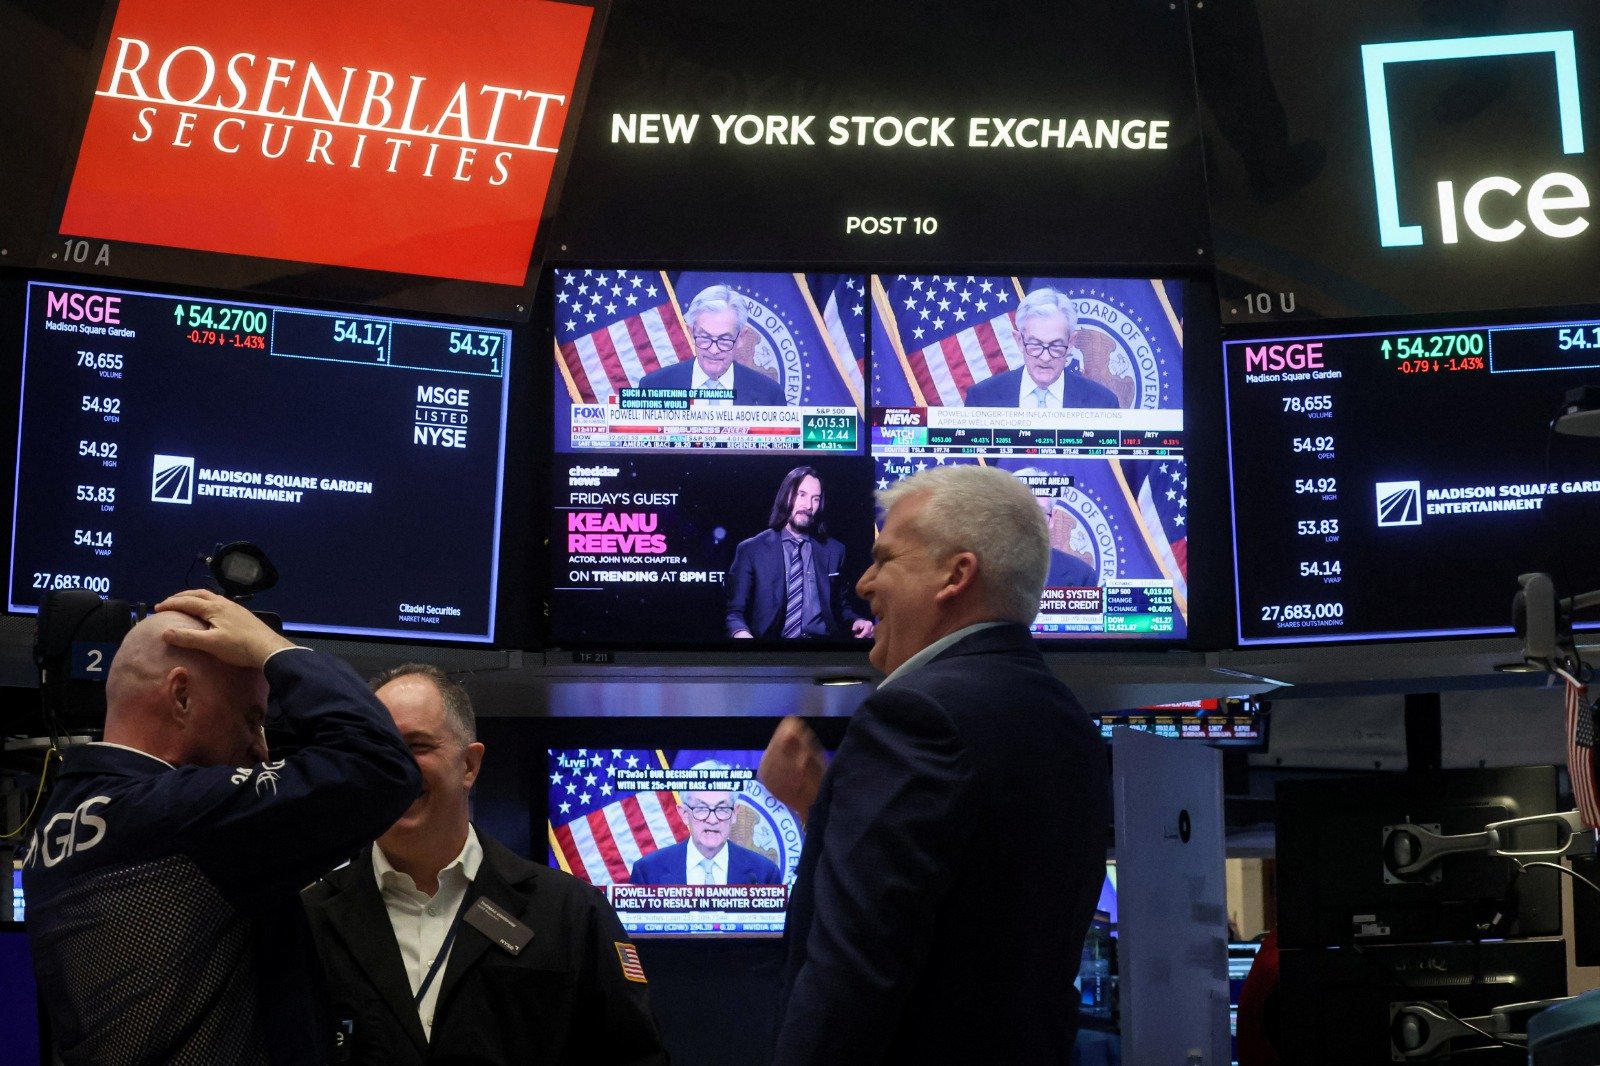 在美国纽约证券交易所 (NYSE) 的屏幕上，播放著美联储委员会主席鲍威尔在新闻发布会上讲话的画面。（图取自路透社）